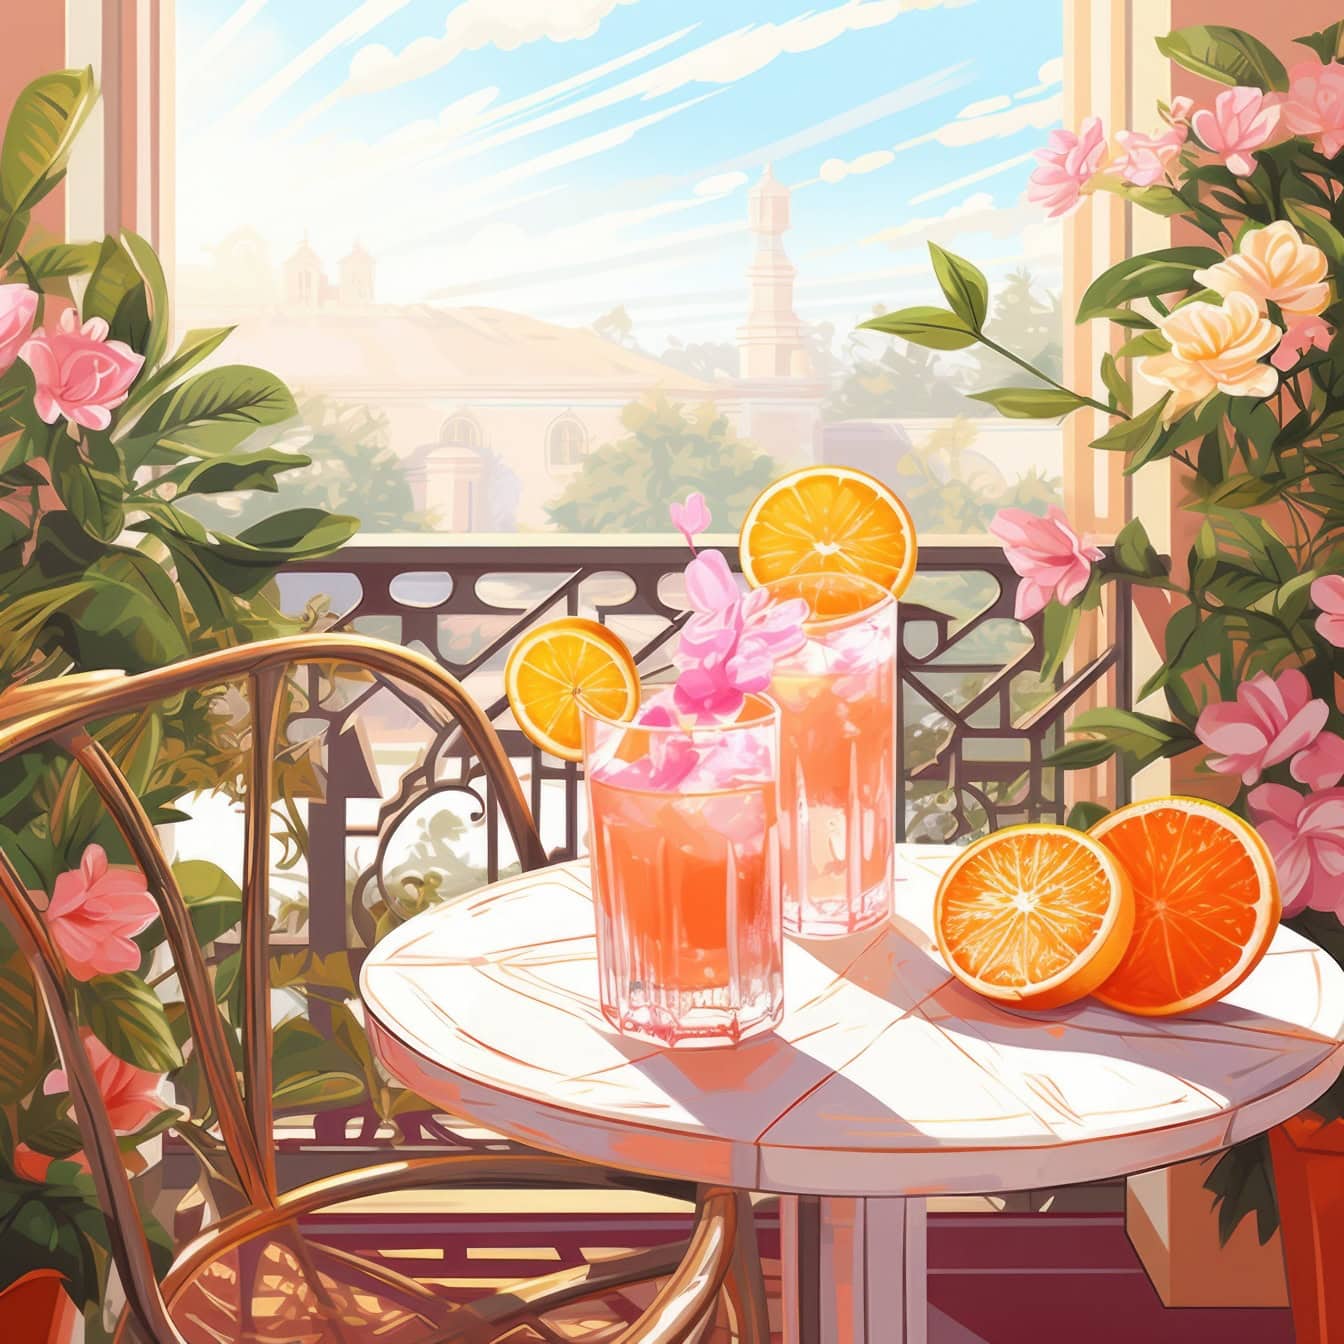 Grafické znázornenie stola s pomarančovými šťavami, pomarančmi a kvetmi